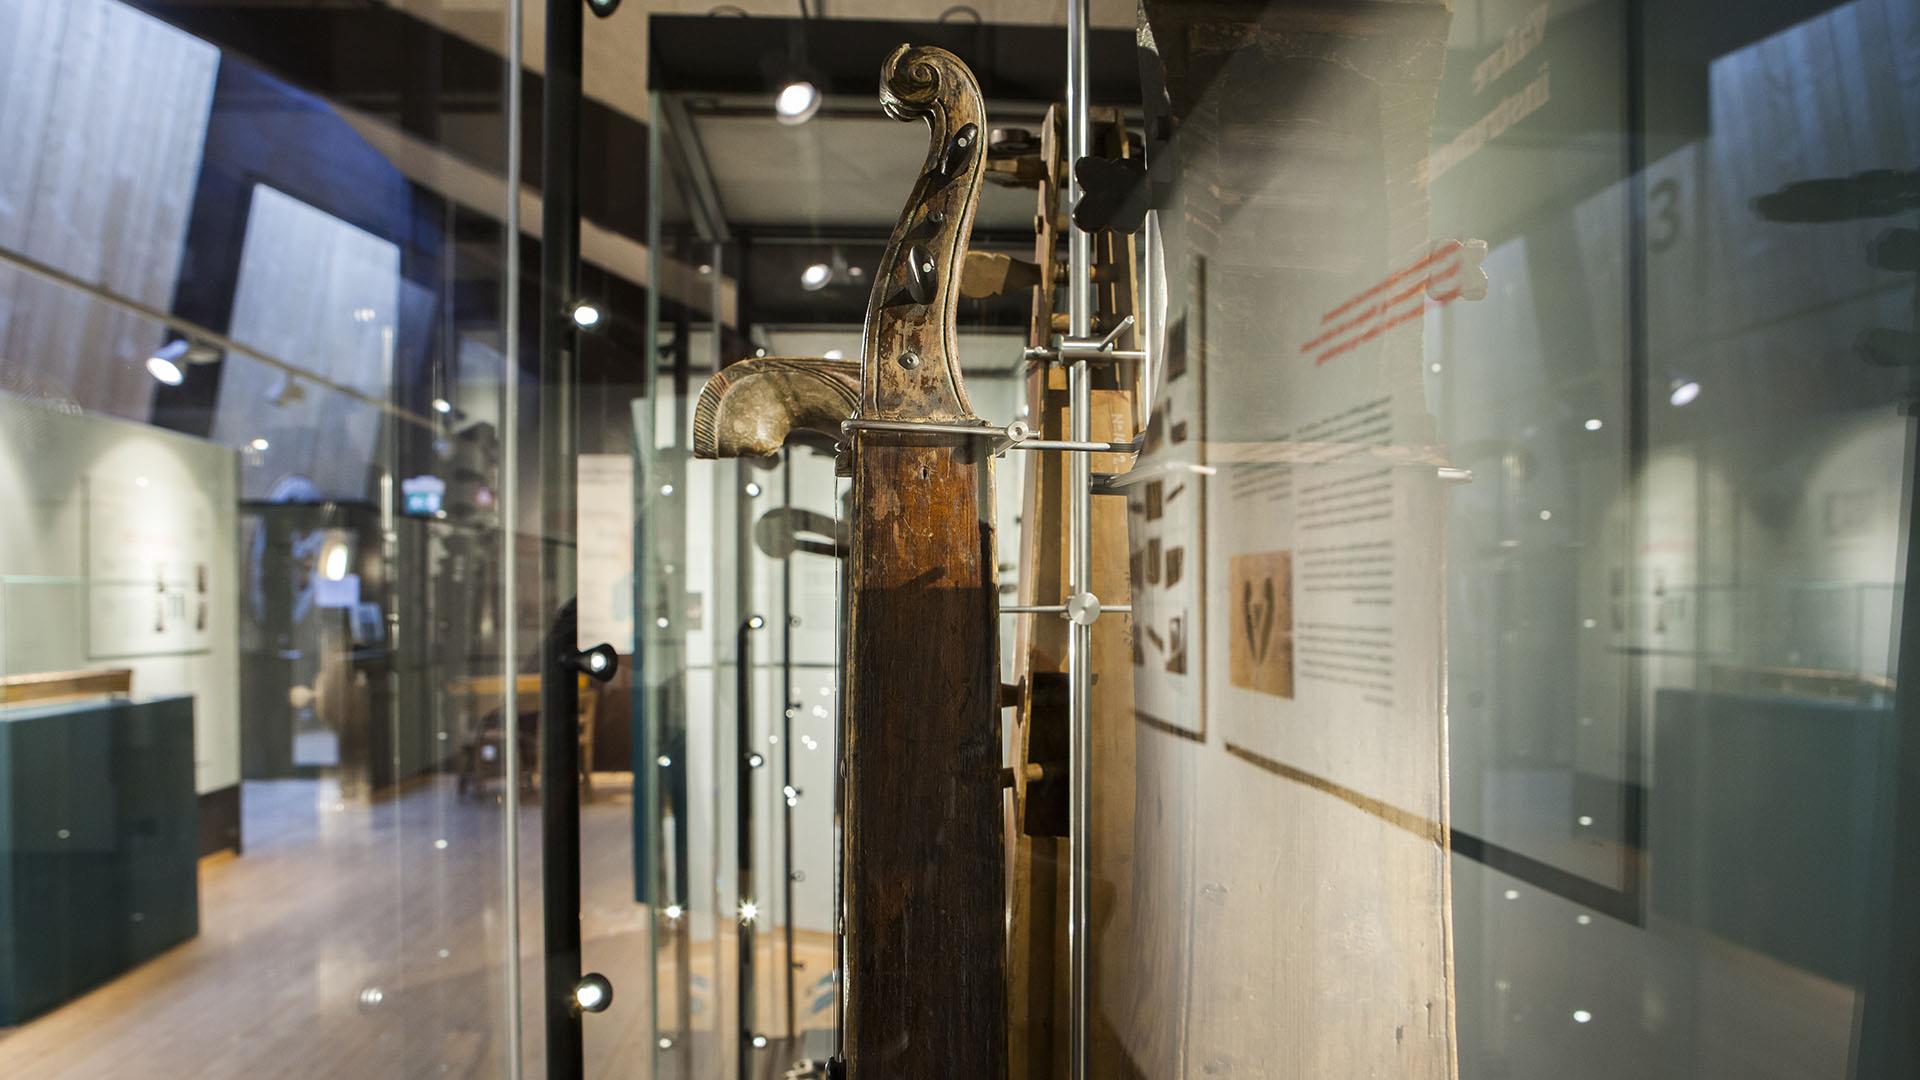 Eine alte Langeleik (zither-ähnliches Musikinstrument) in einem gläsernen Schaukasten in einem Museum.